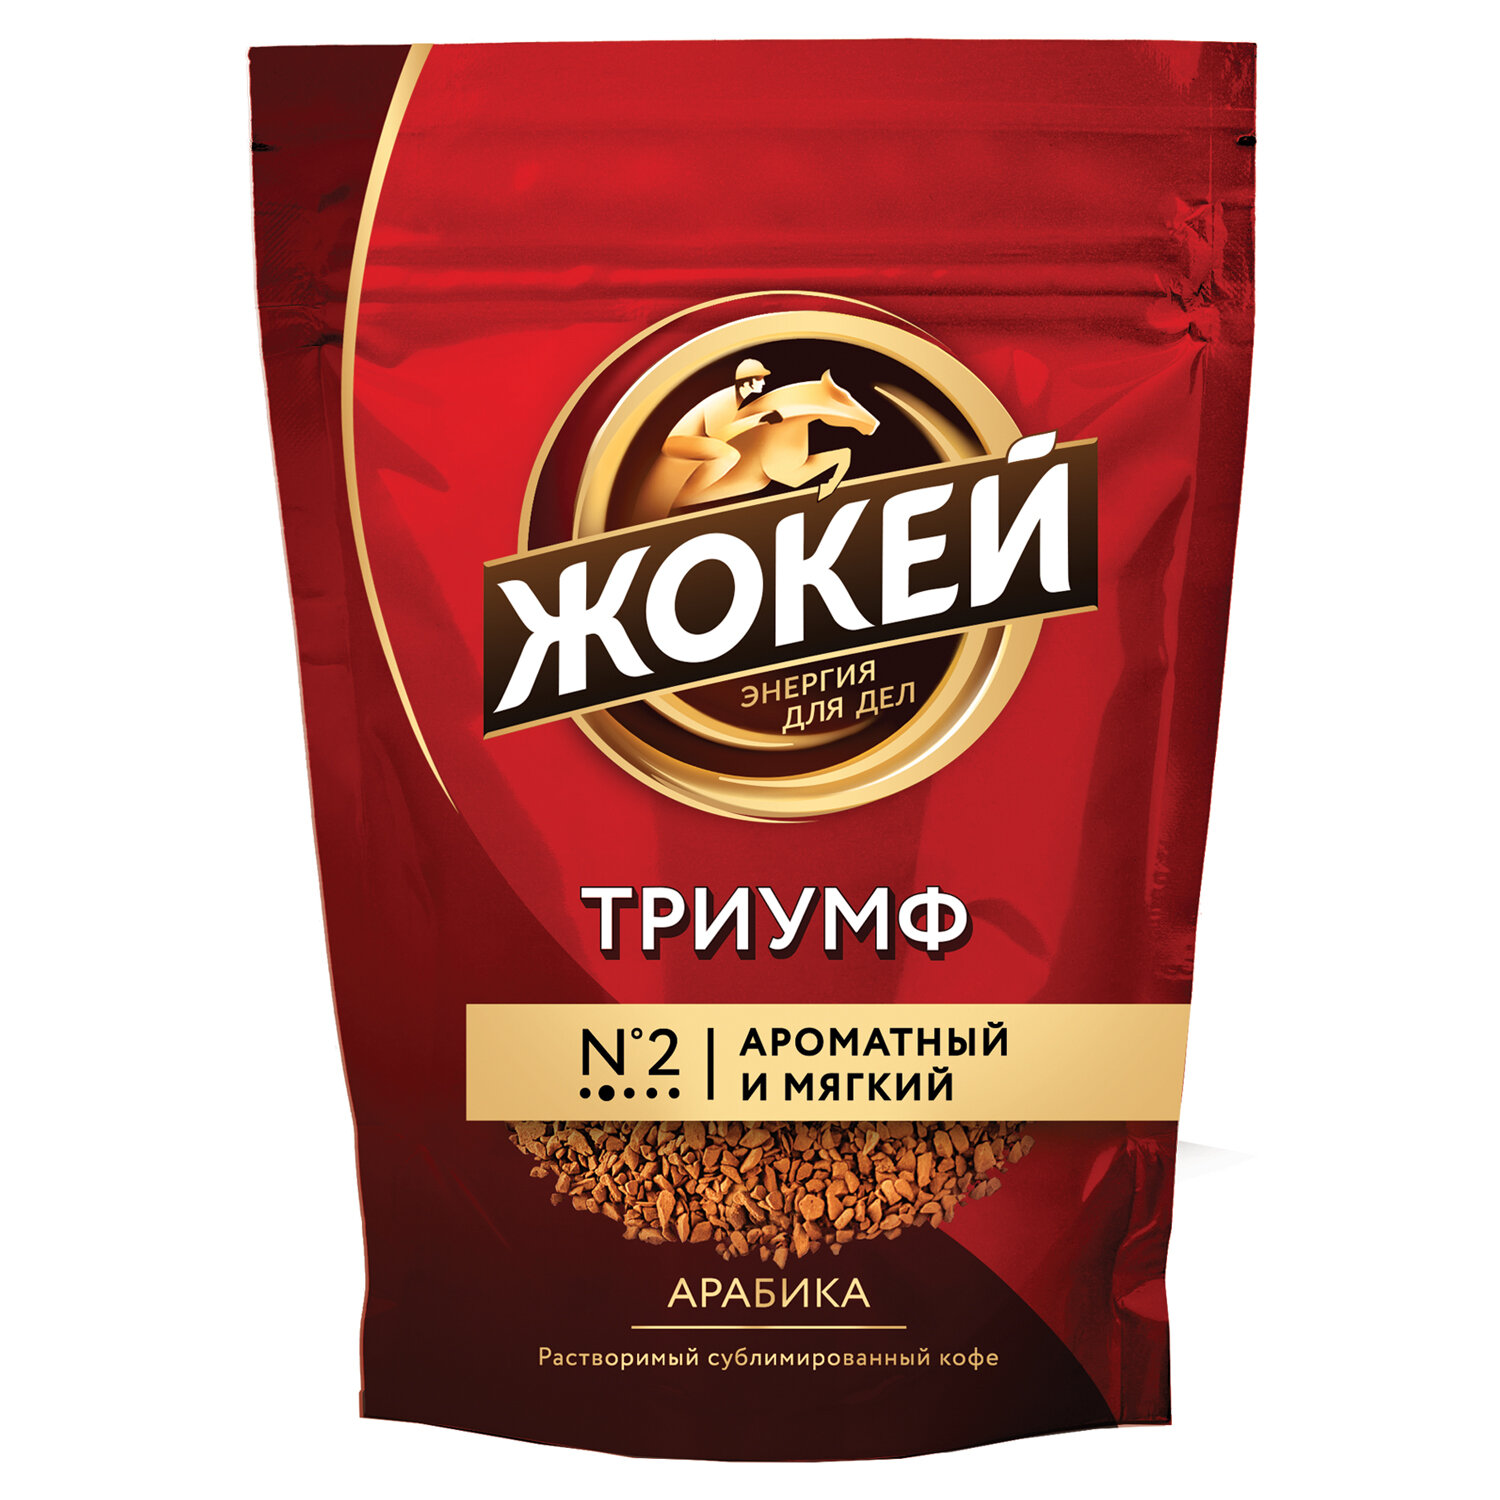 Кофе ЖОКЕЙ 1000-08-0, комплект 3 шт.